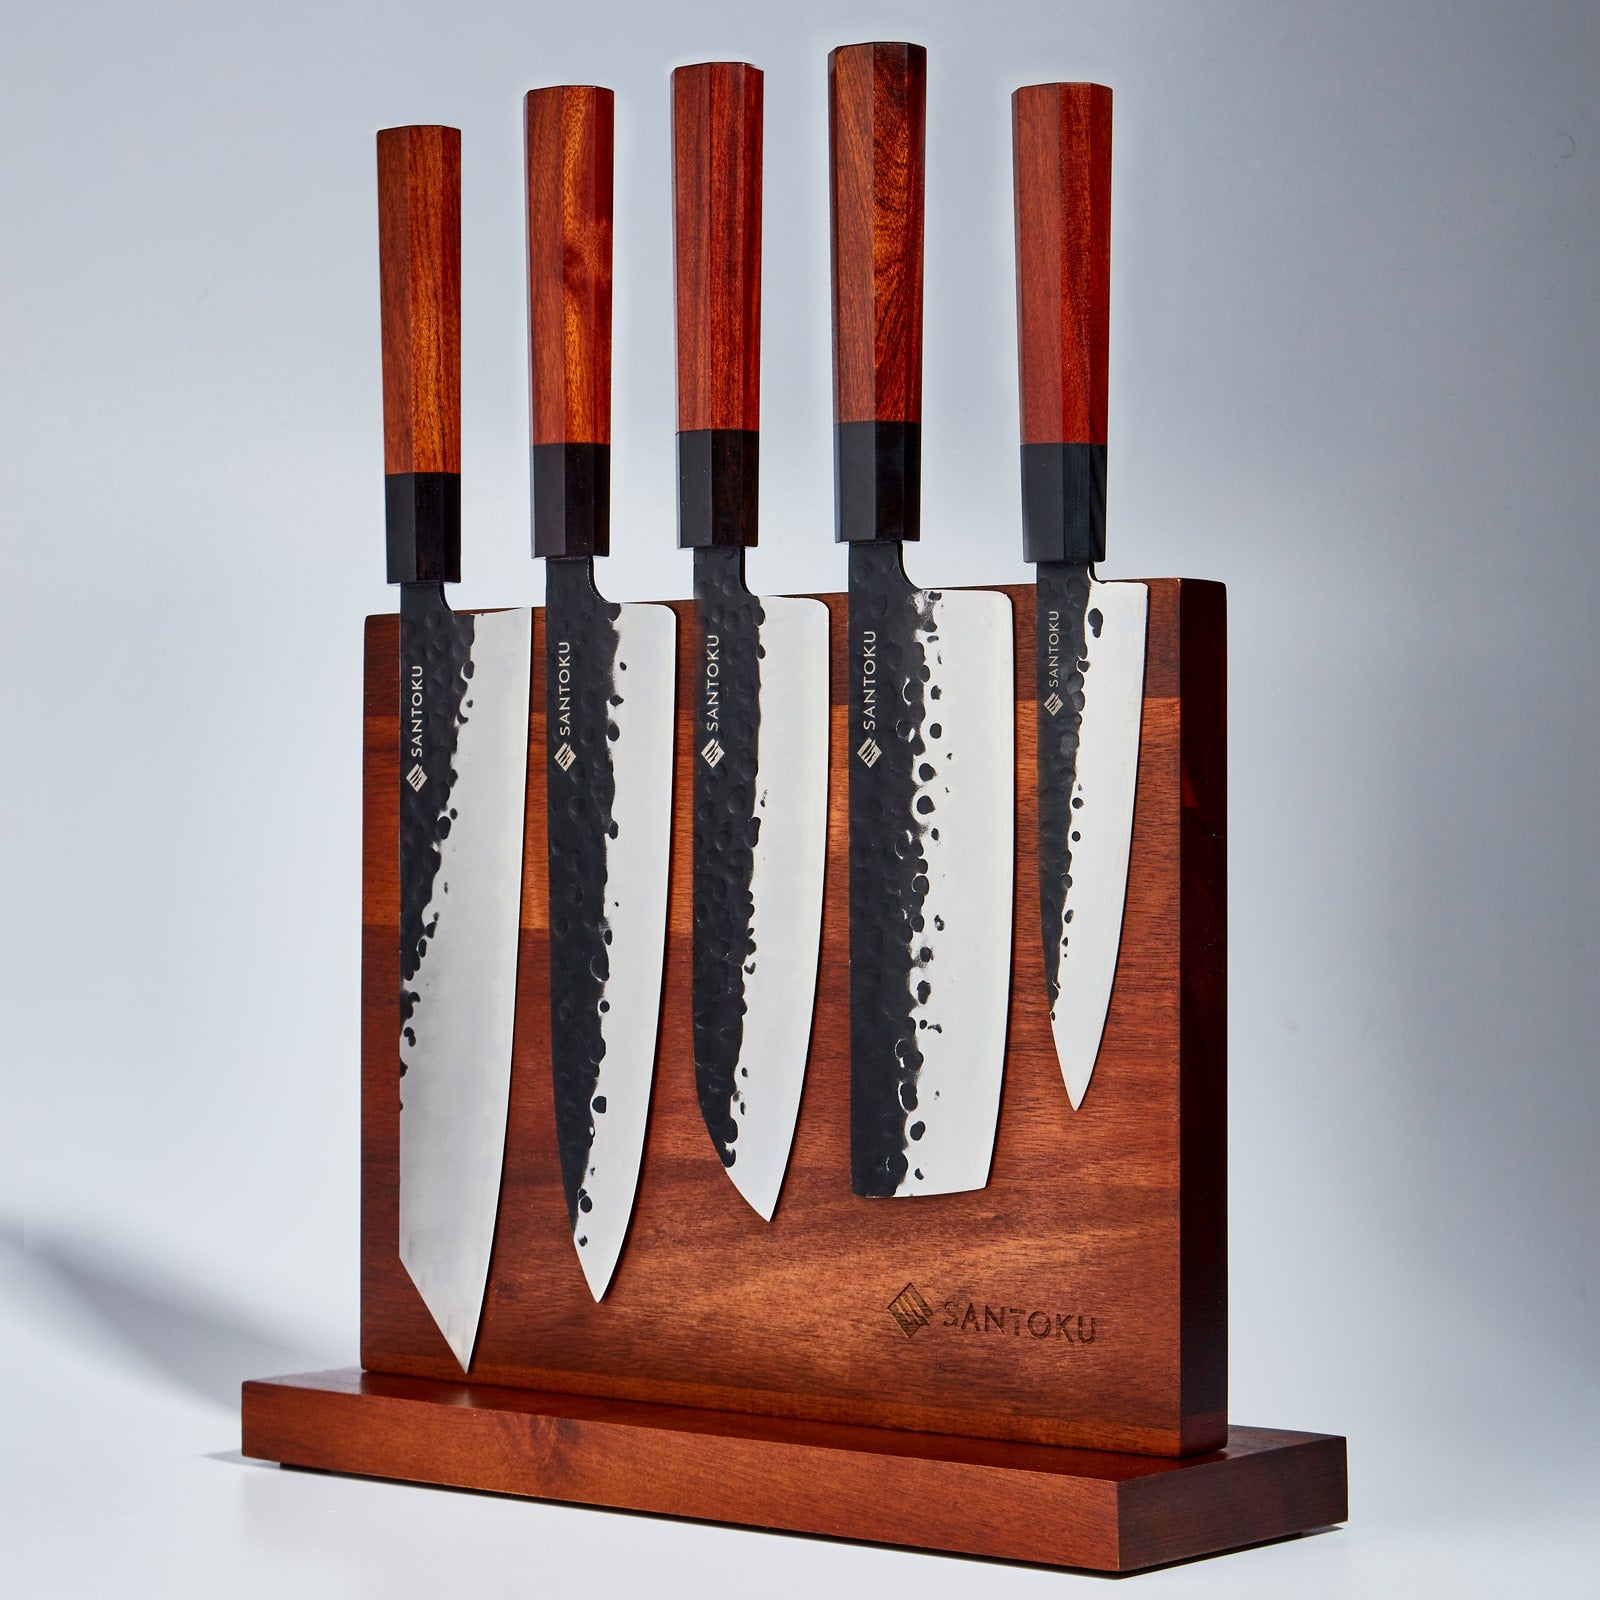 سلسلة سكاكين ميناتو مع حامل سكاكين مغناطيسي من خشب السنط